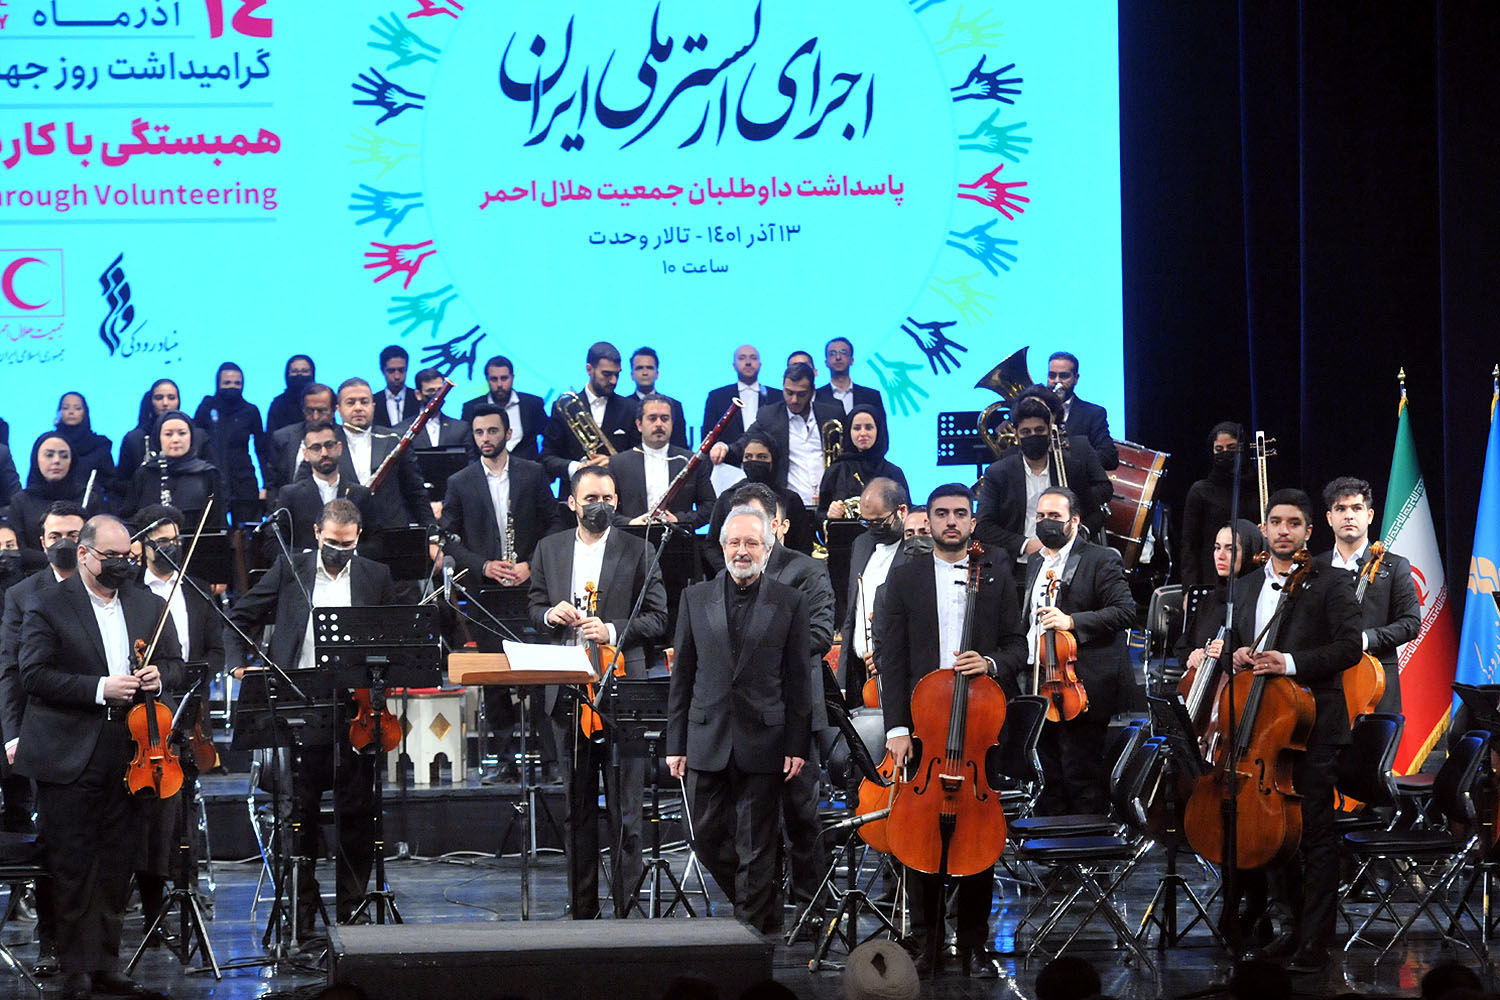 فالش خواندن عمدی سرود ملی صحت دارد؟/ ویدئویی از اجرای ارکستر ملی ایران